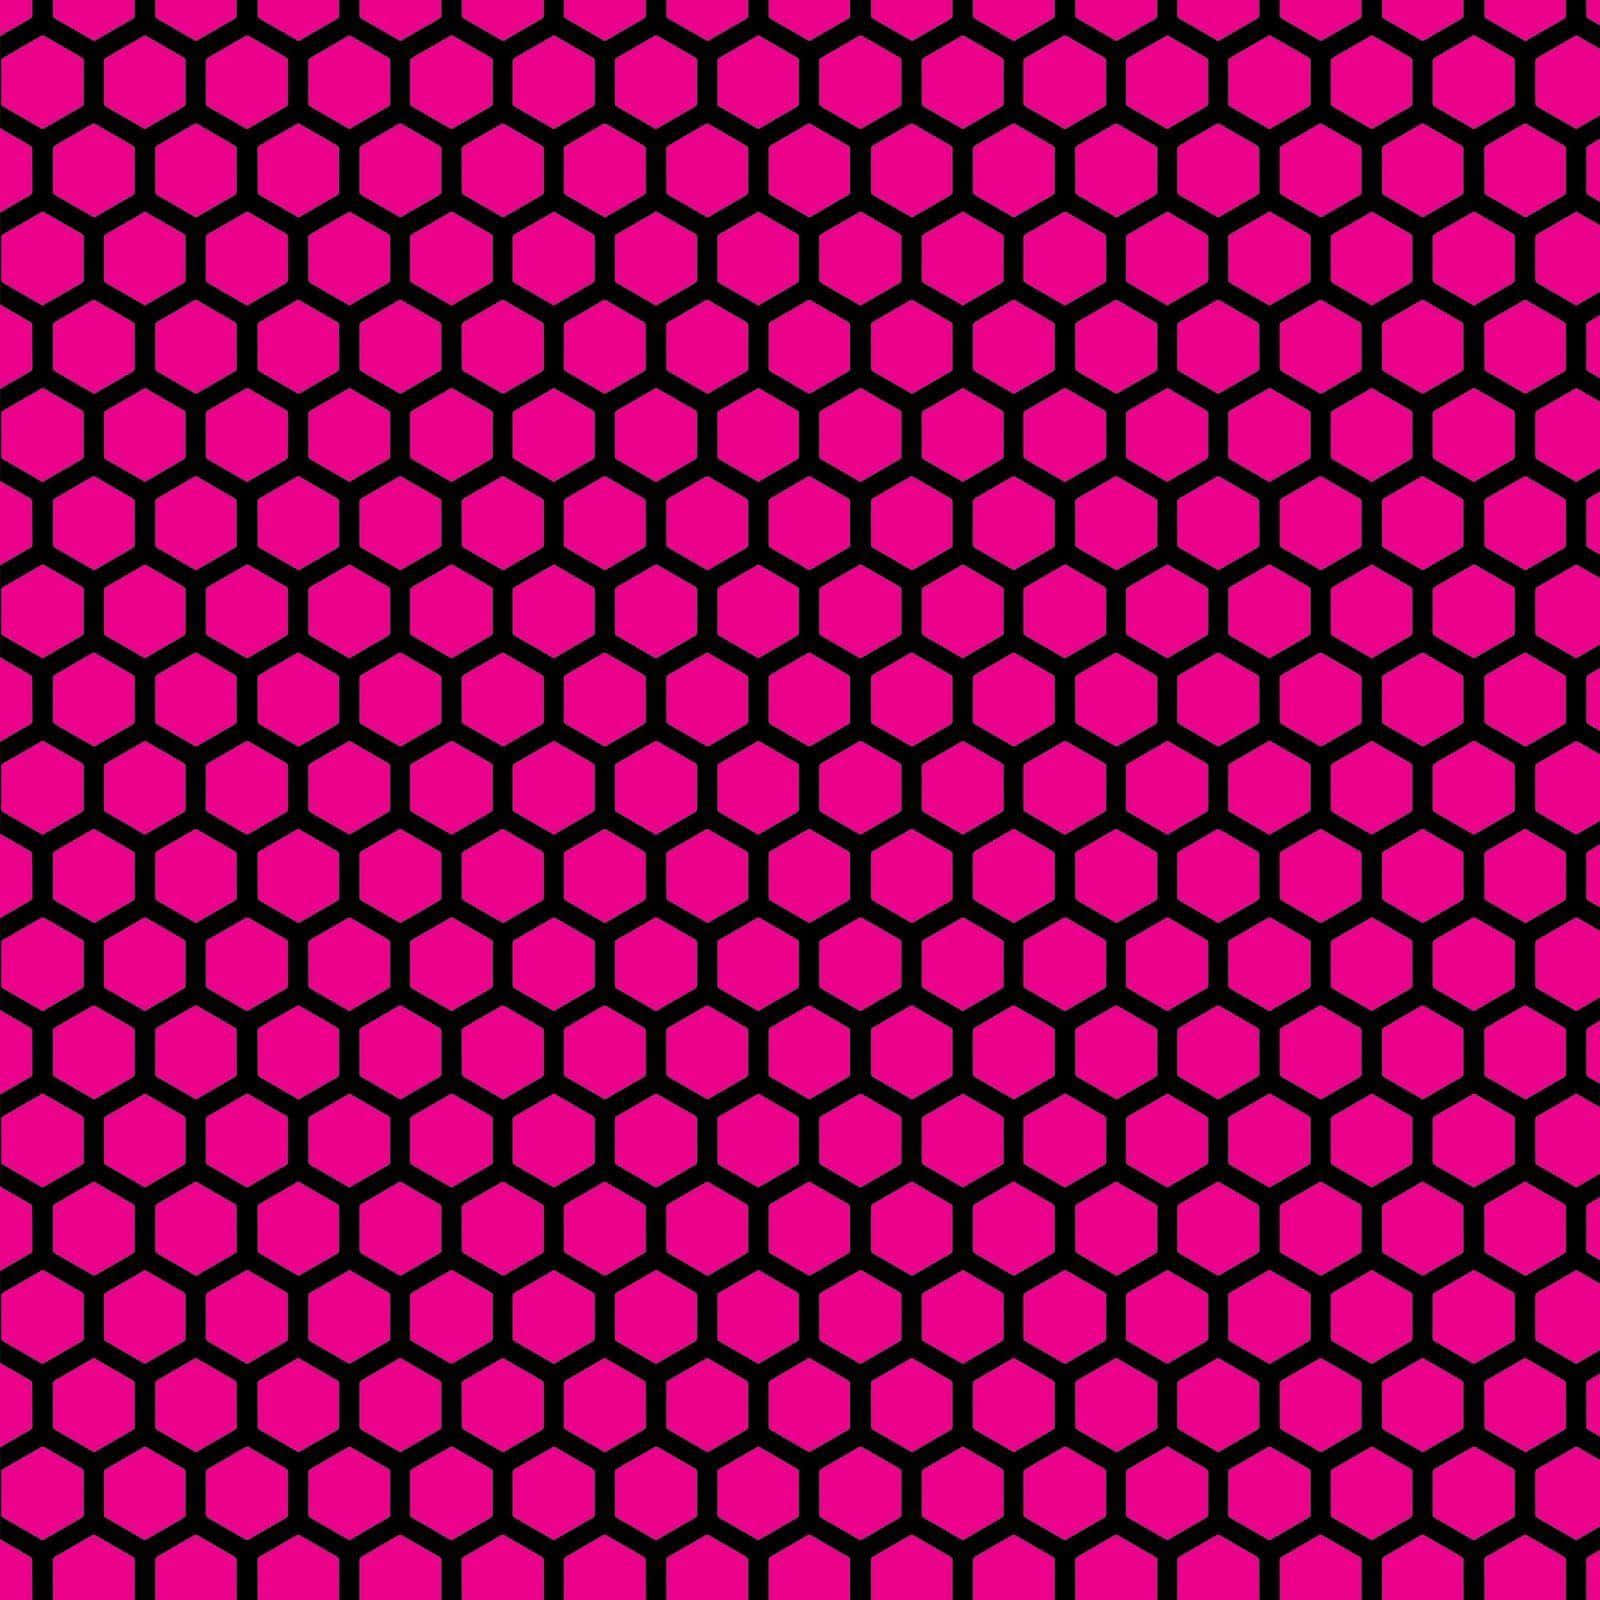 Enlivlig Neon Pink Baggrund Med Et Sjovt Mønster. Wallpaper